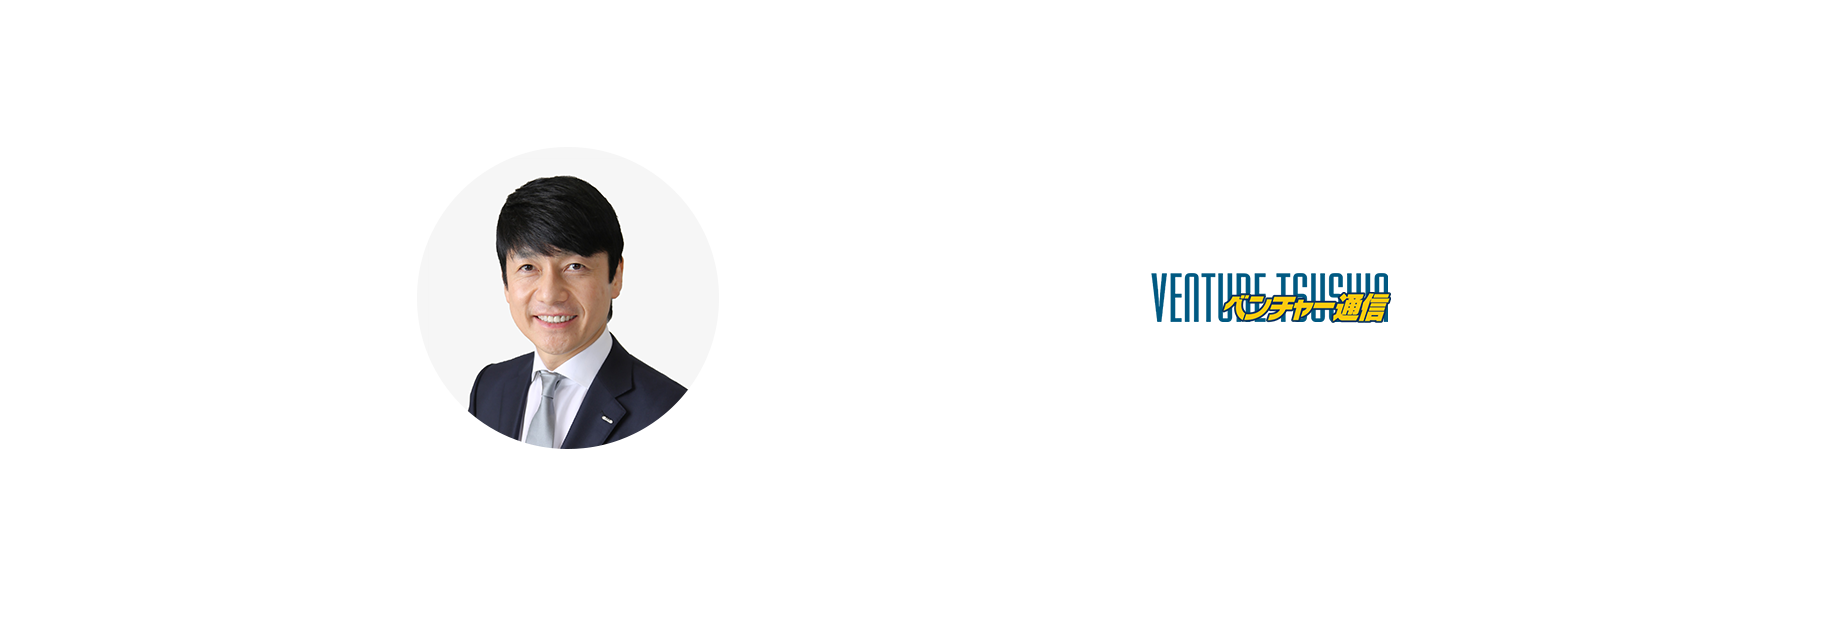 GMO TODOROKI 熊谷正寿がスタートアップ起業家を応援する